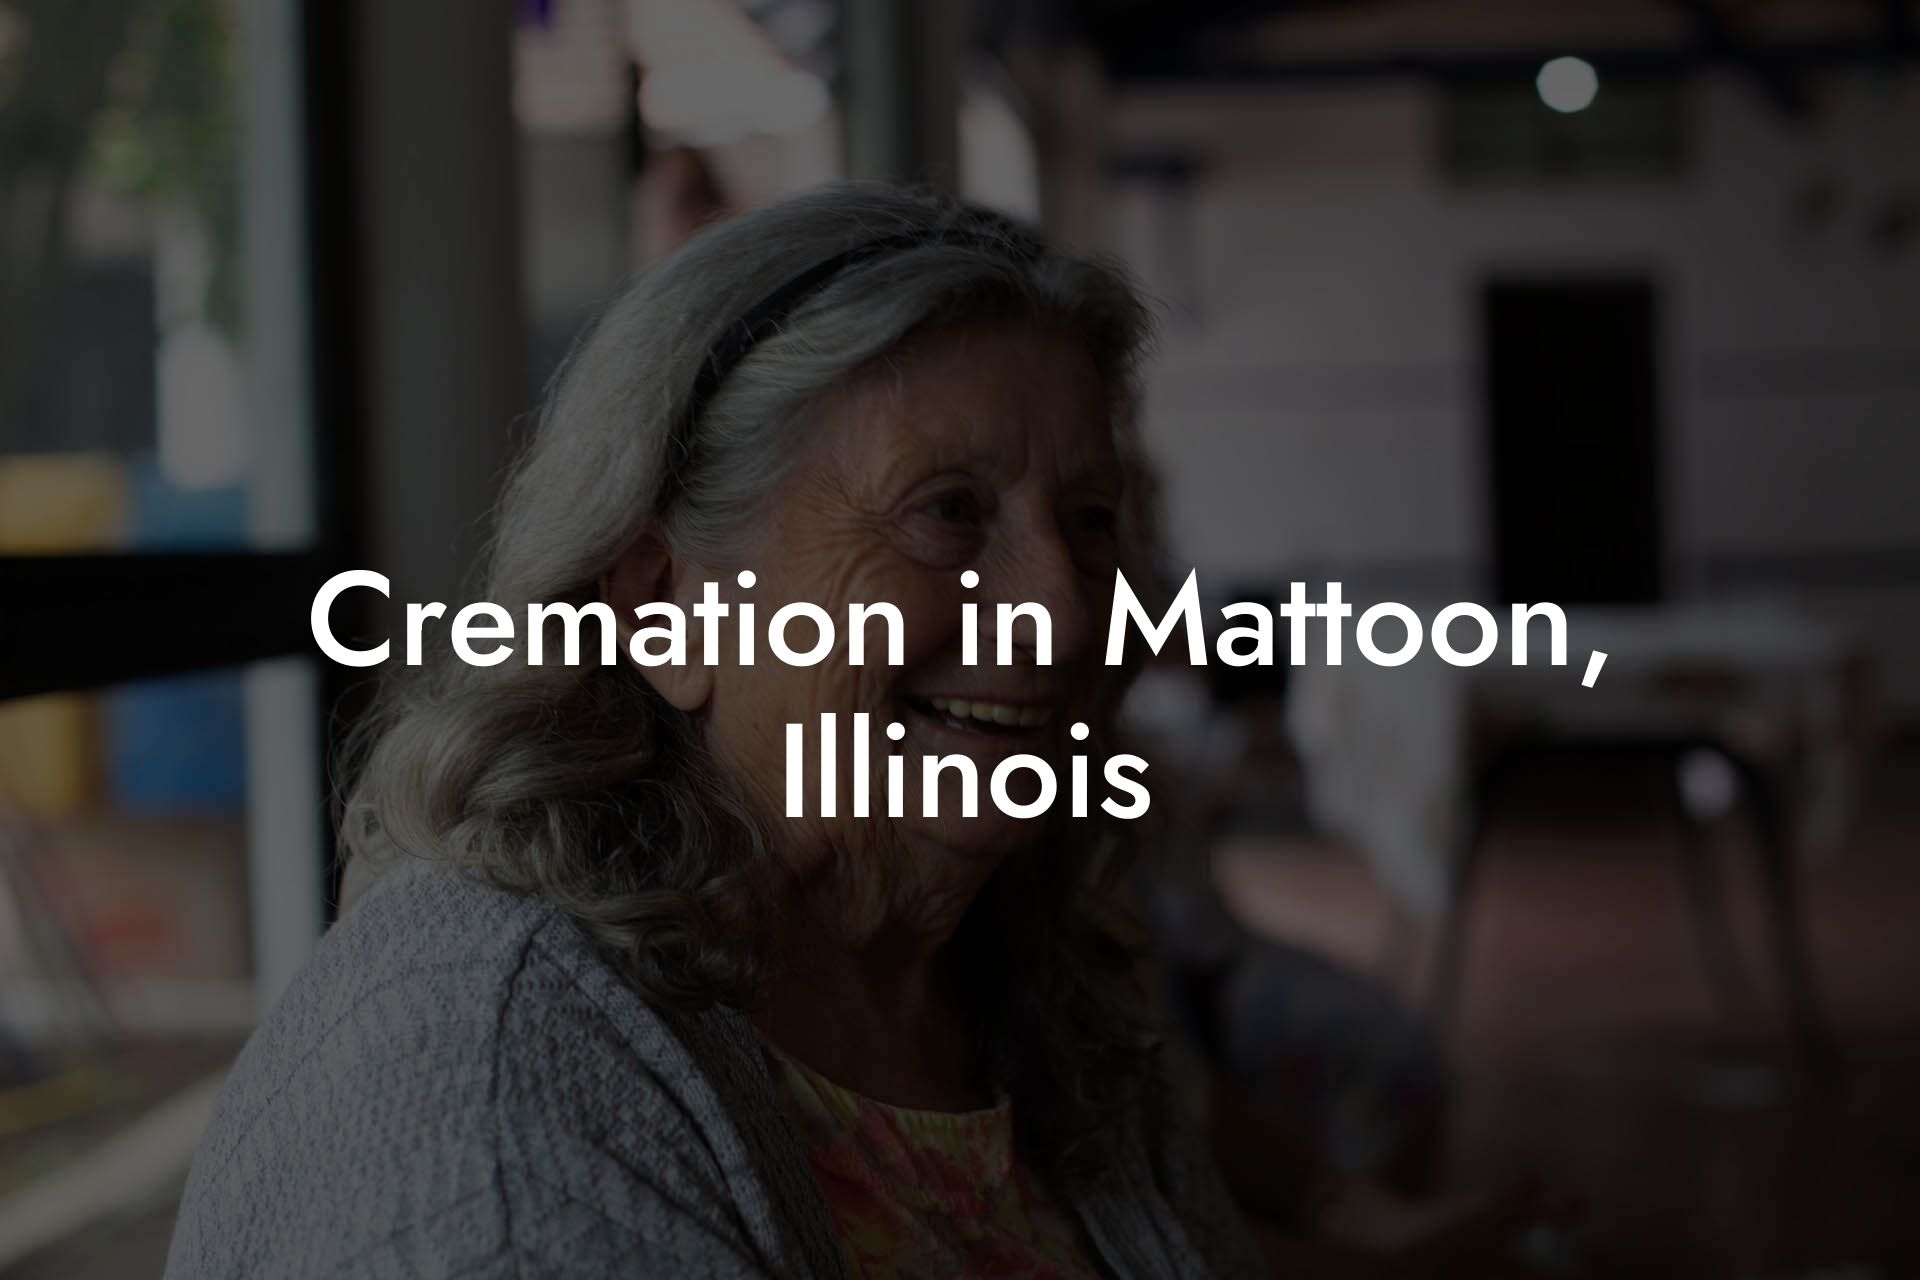 Cremation in Mattoon, Illinois